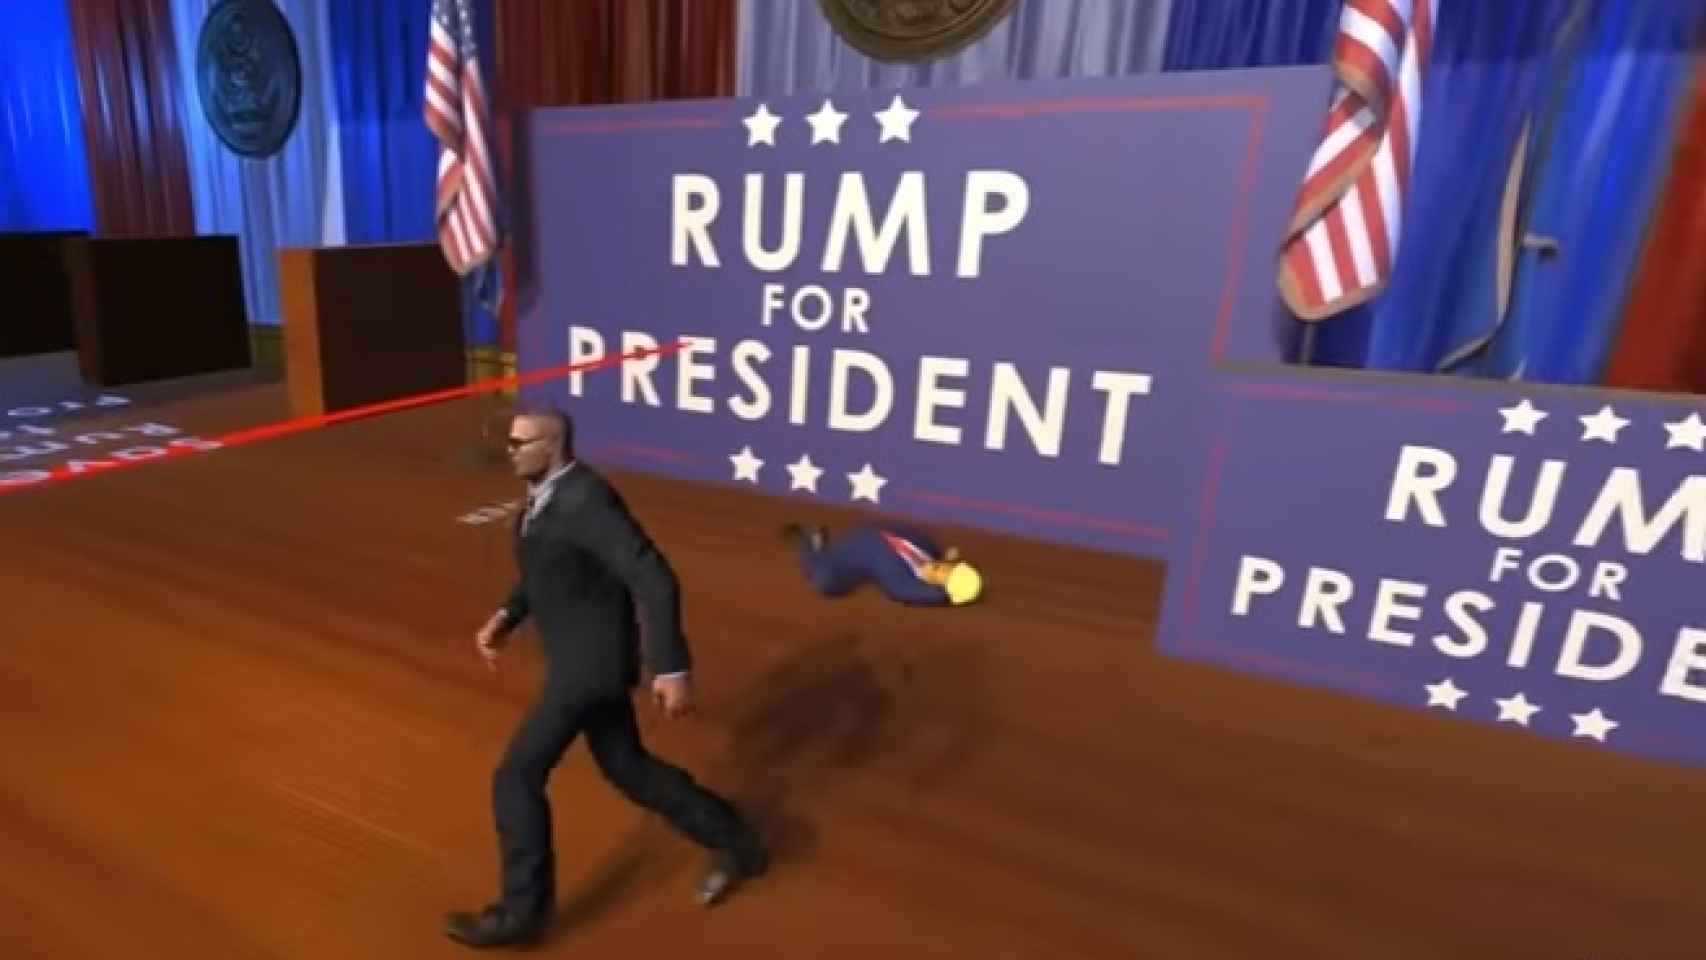 En el juego hay que saltar frente al presidente para recibir el disparo que atenta contra él.